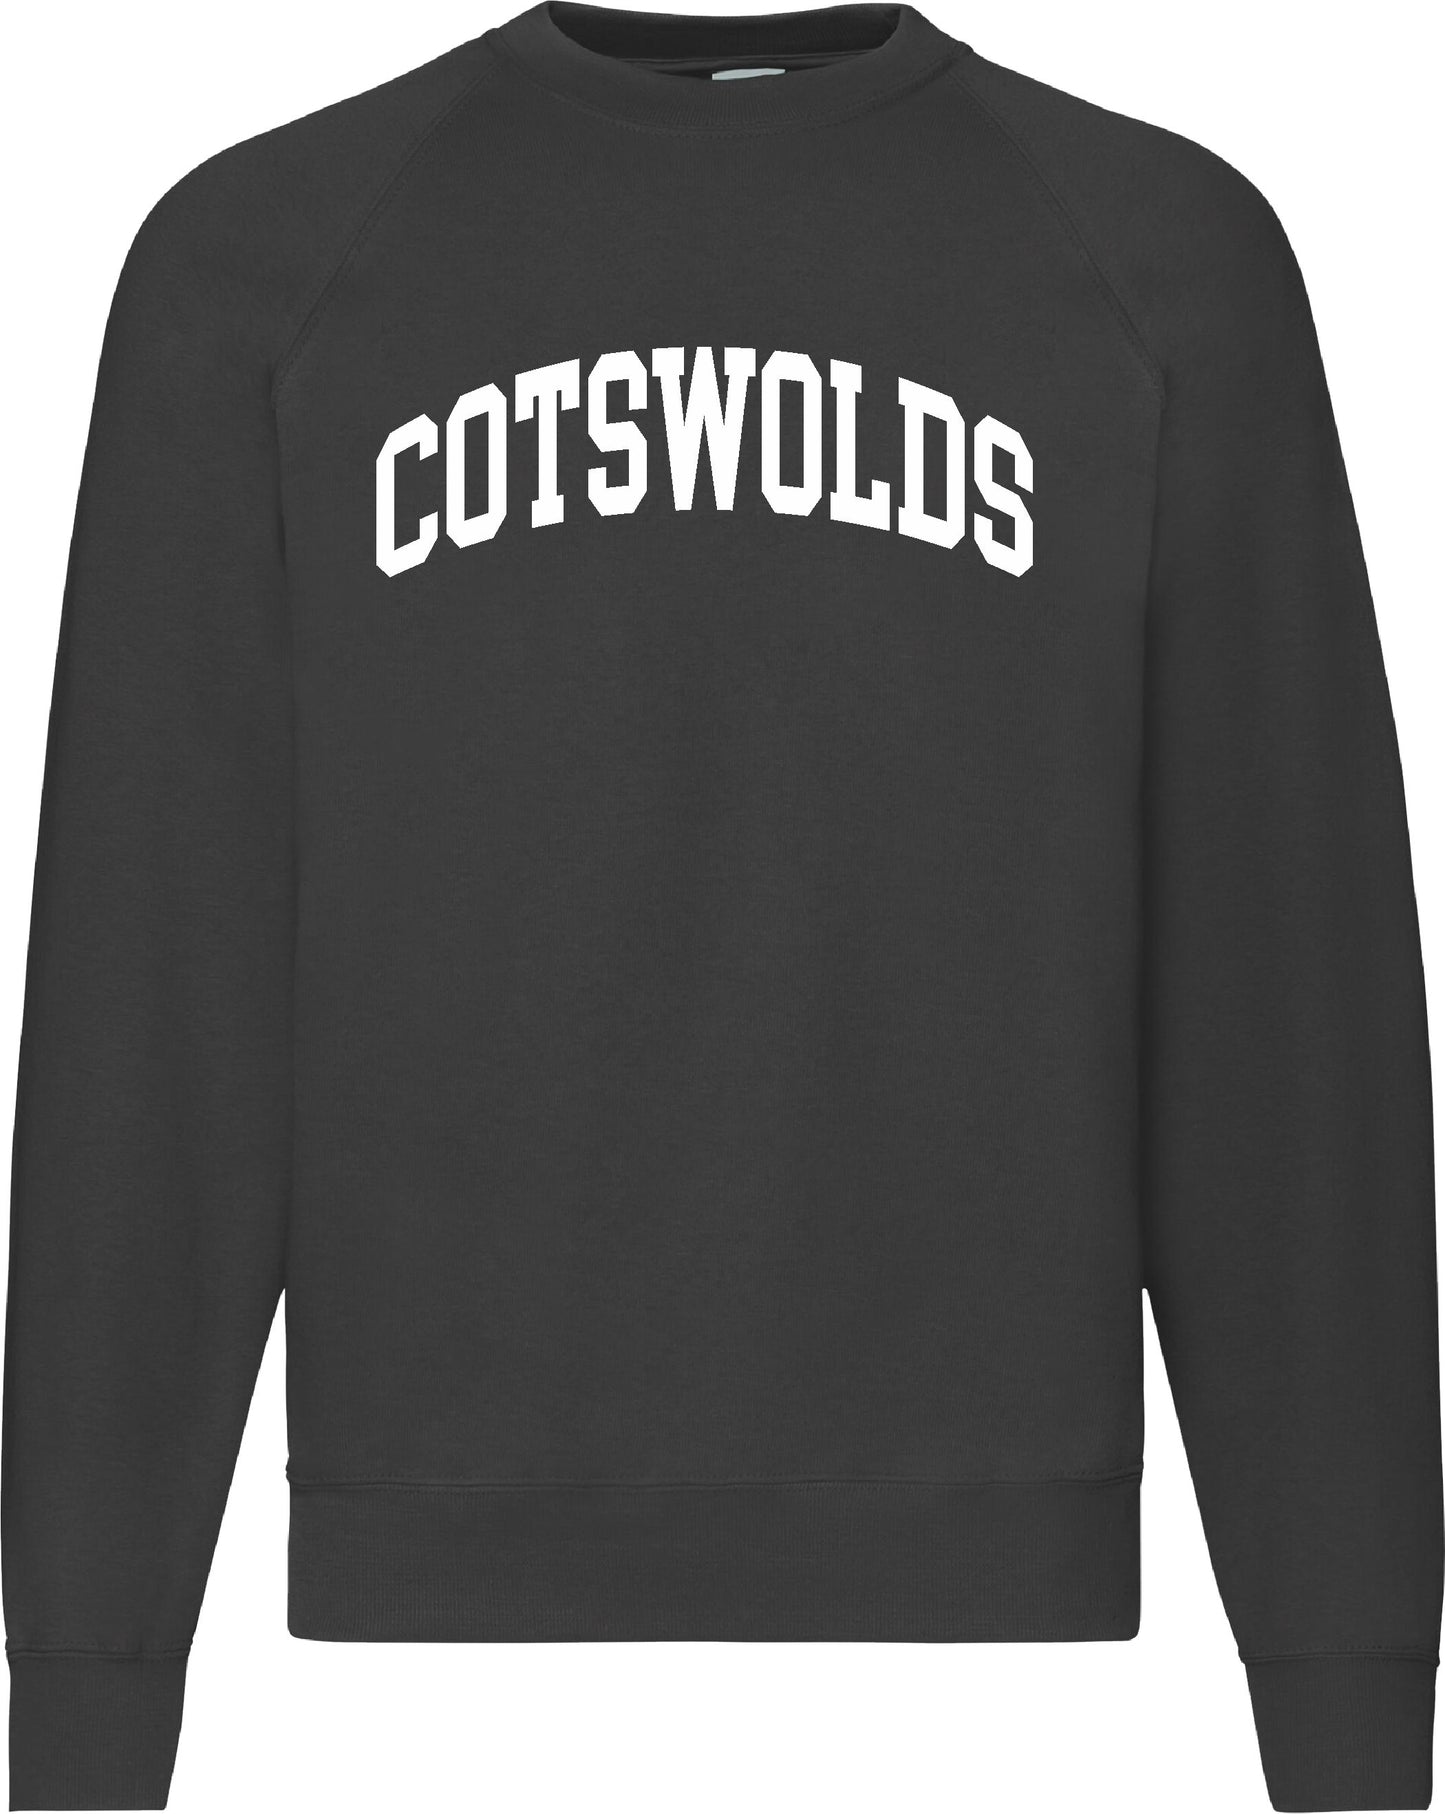 Cotswolds Sweatshirt - Retro College Varsity, Gloucestershire Souvenir, Various Colours